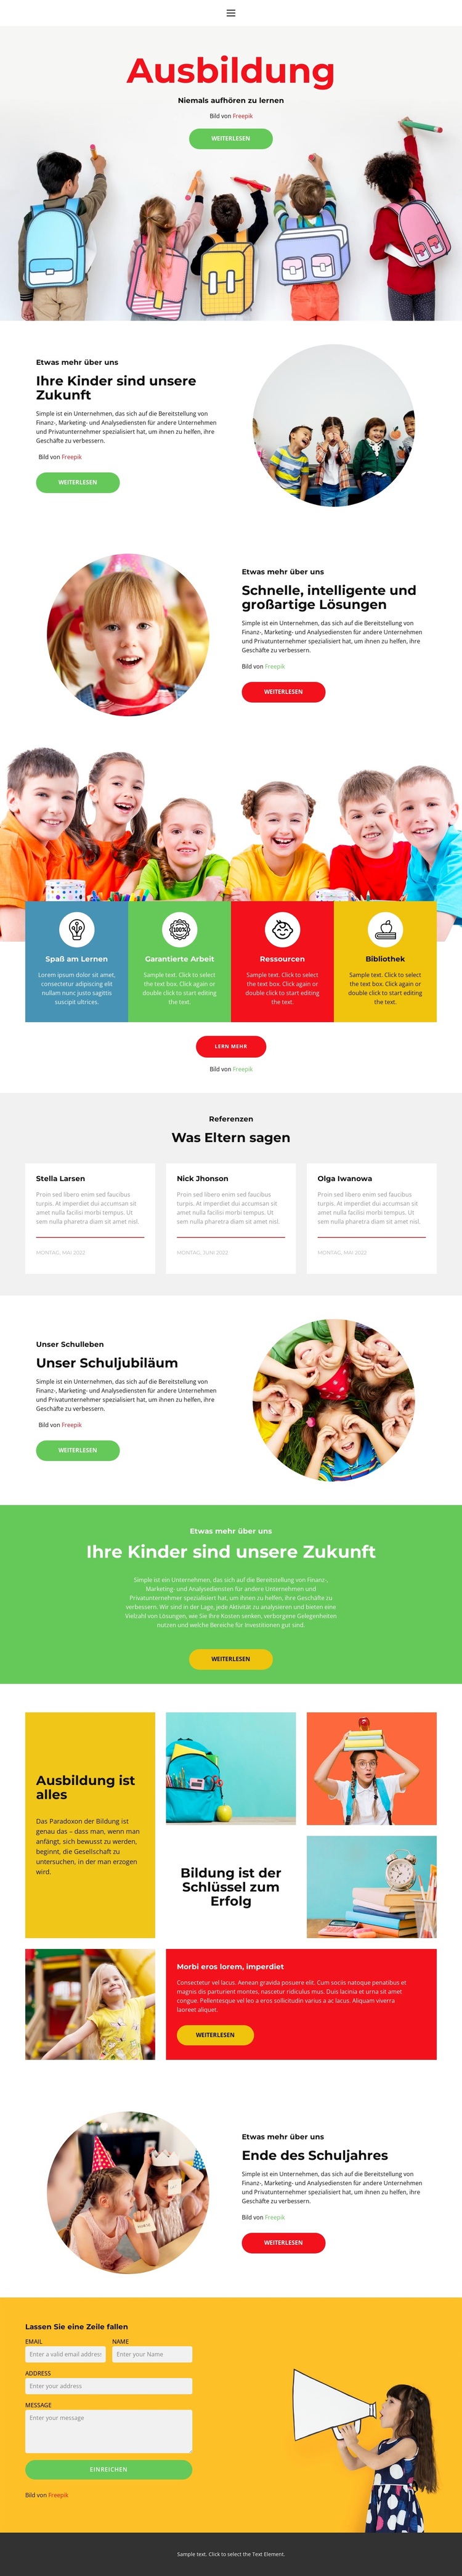 Unser Schulleben WordPress-Theme